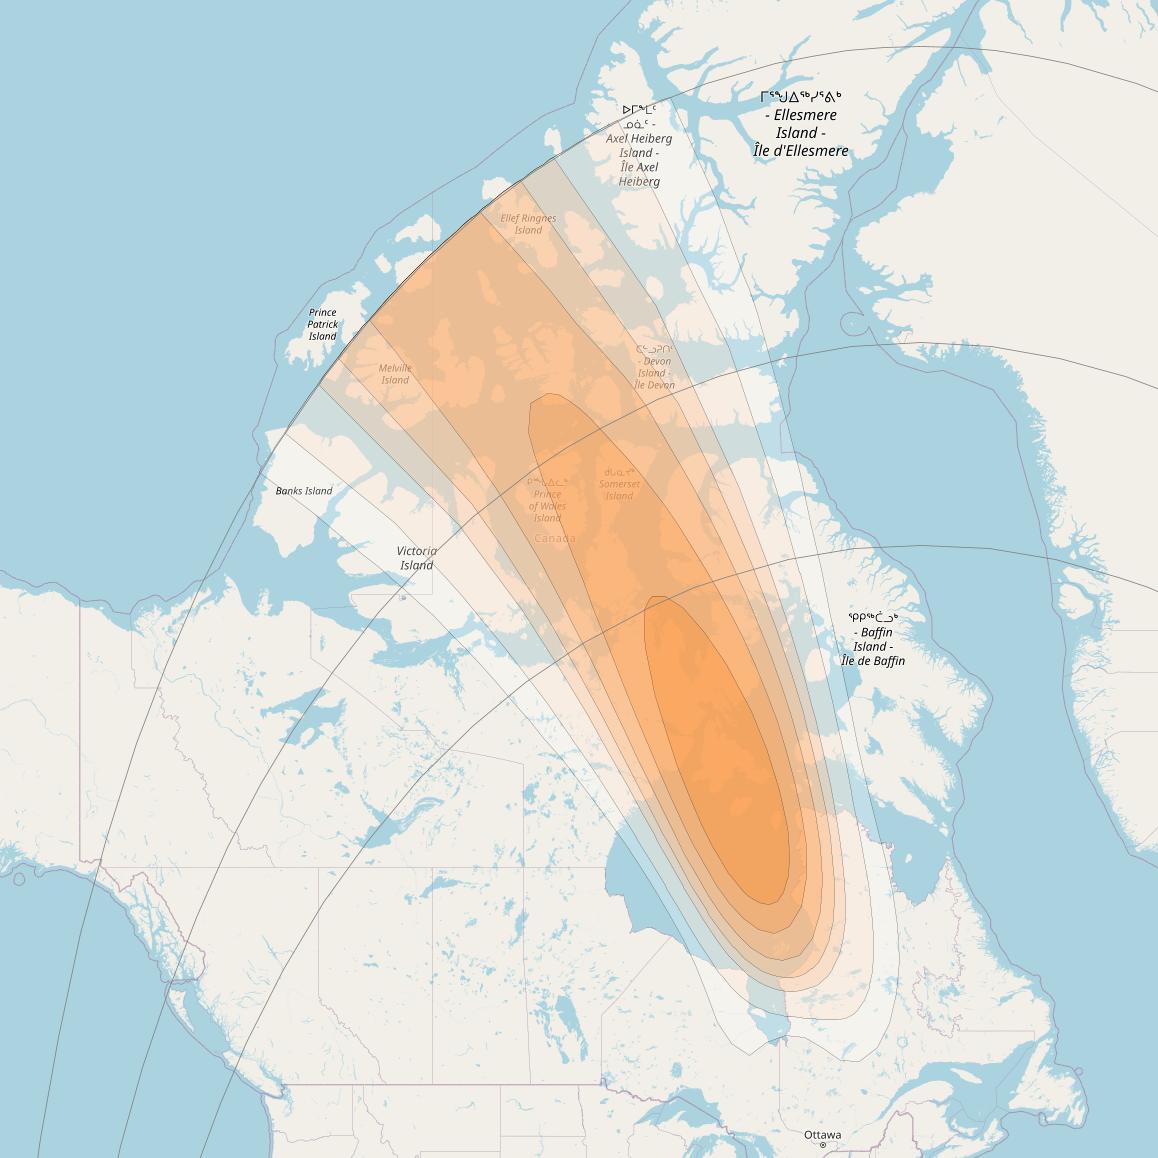 SES 17 at 67° W downlink Ka-band NS04 Spot beam coverage map